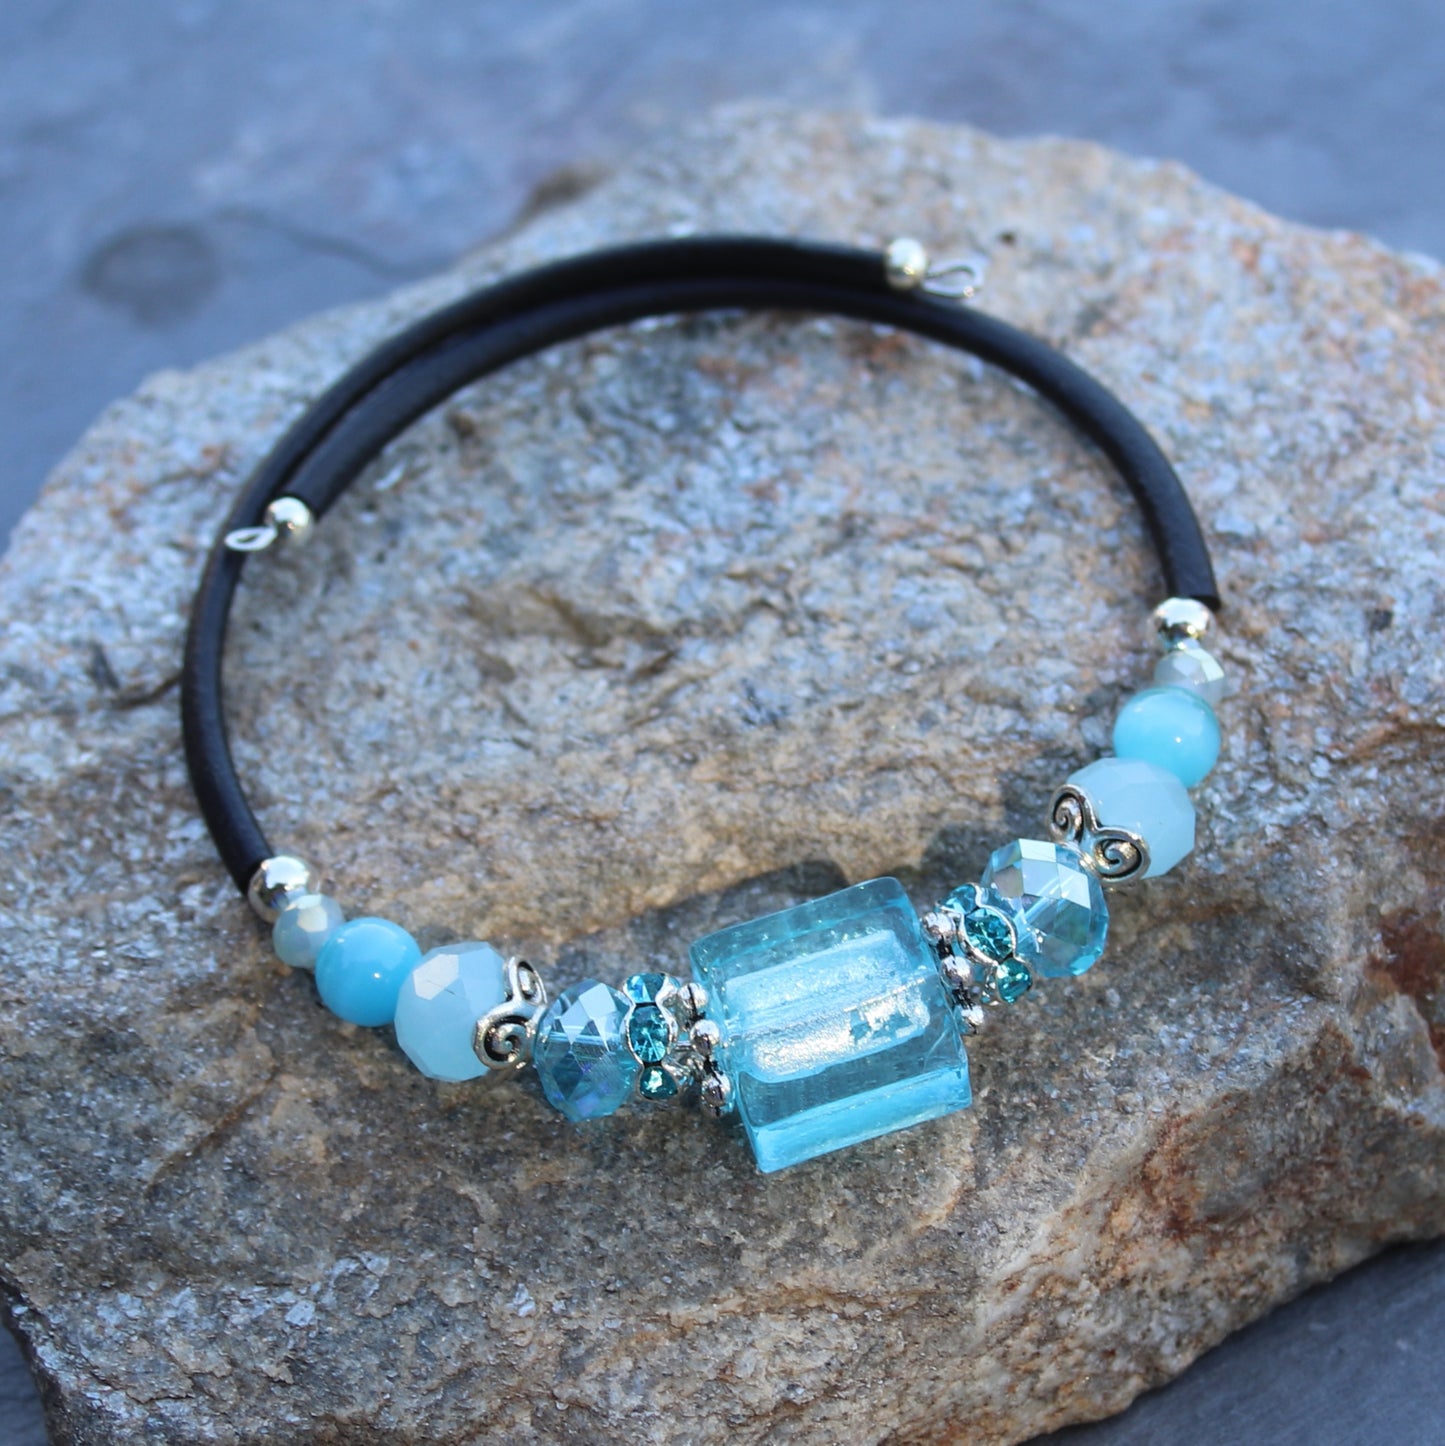 Wrap Bracelet - Aqua colored glass beads